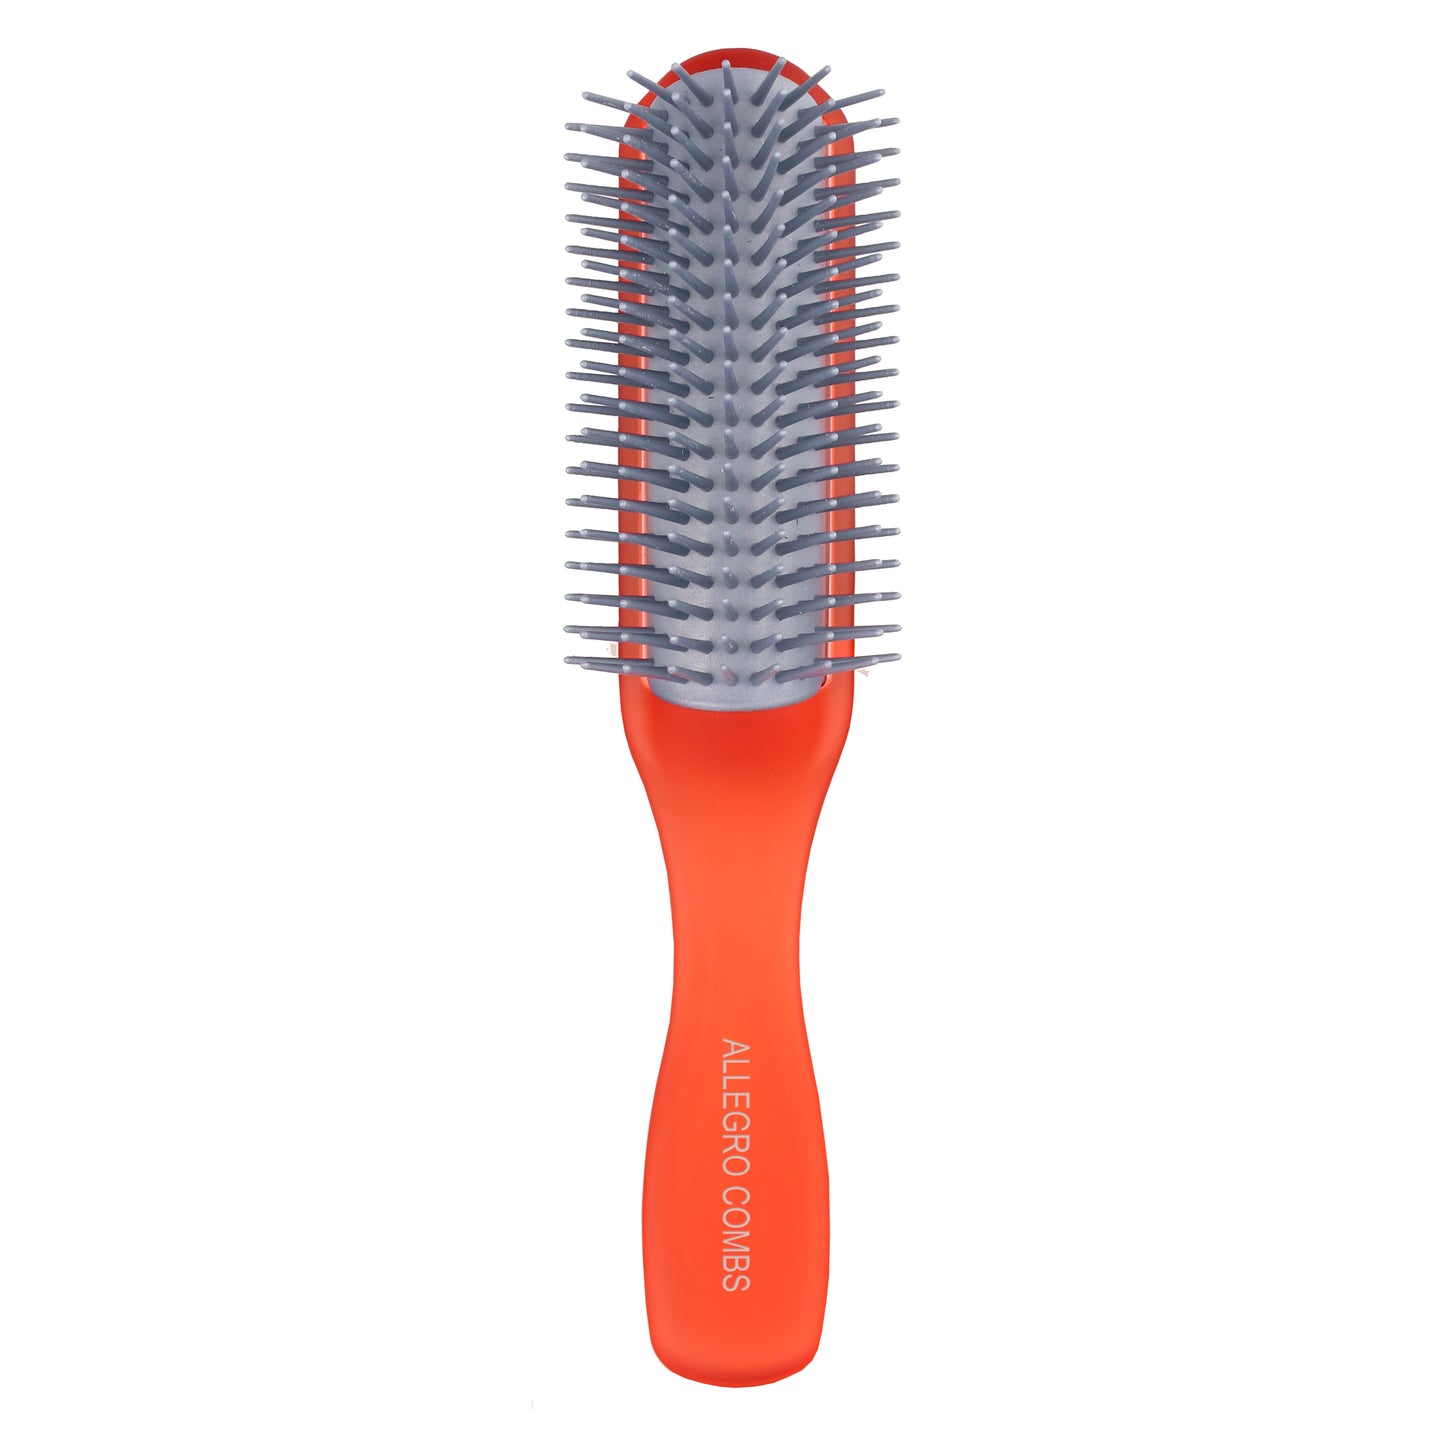 Allegro Combs ScalpCaress: Detangler Hair Brush for Men, Women, and Children